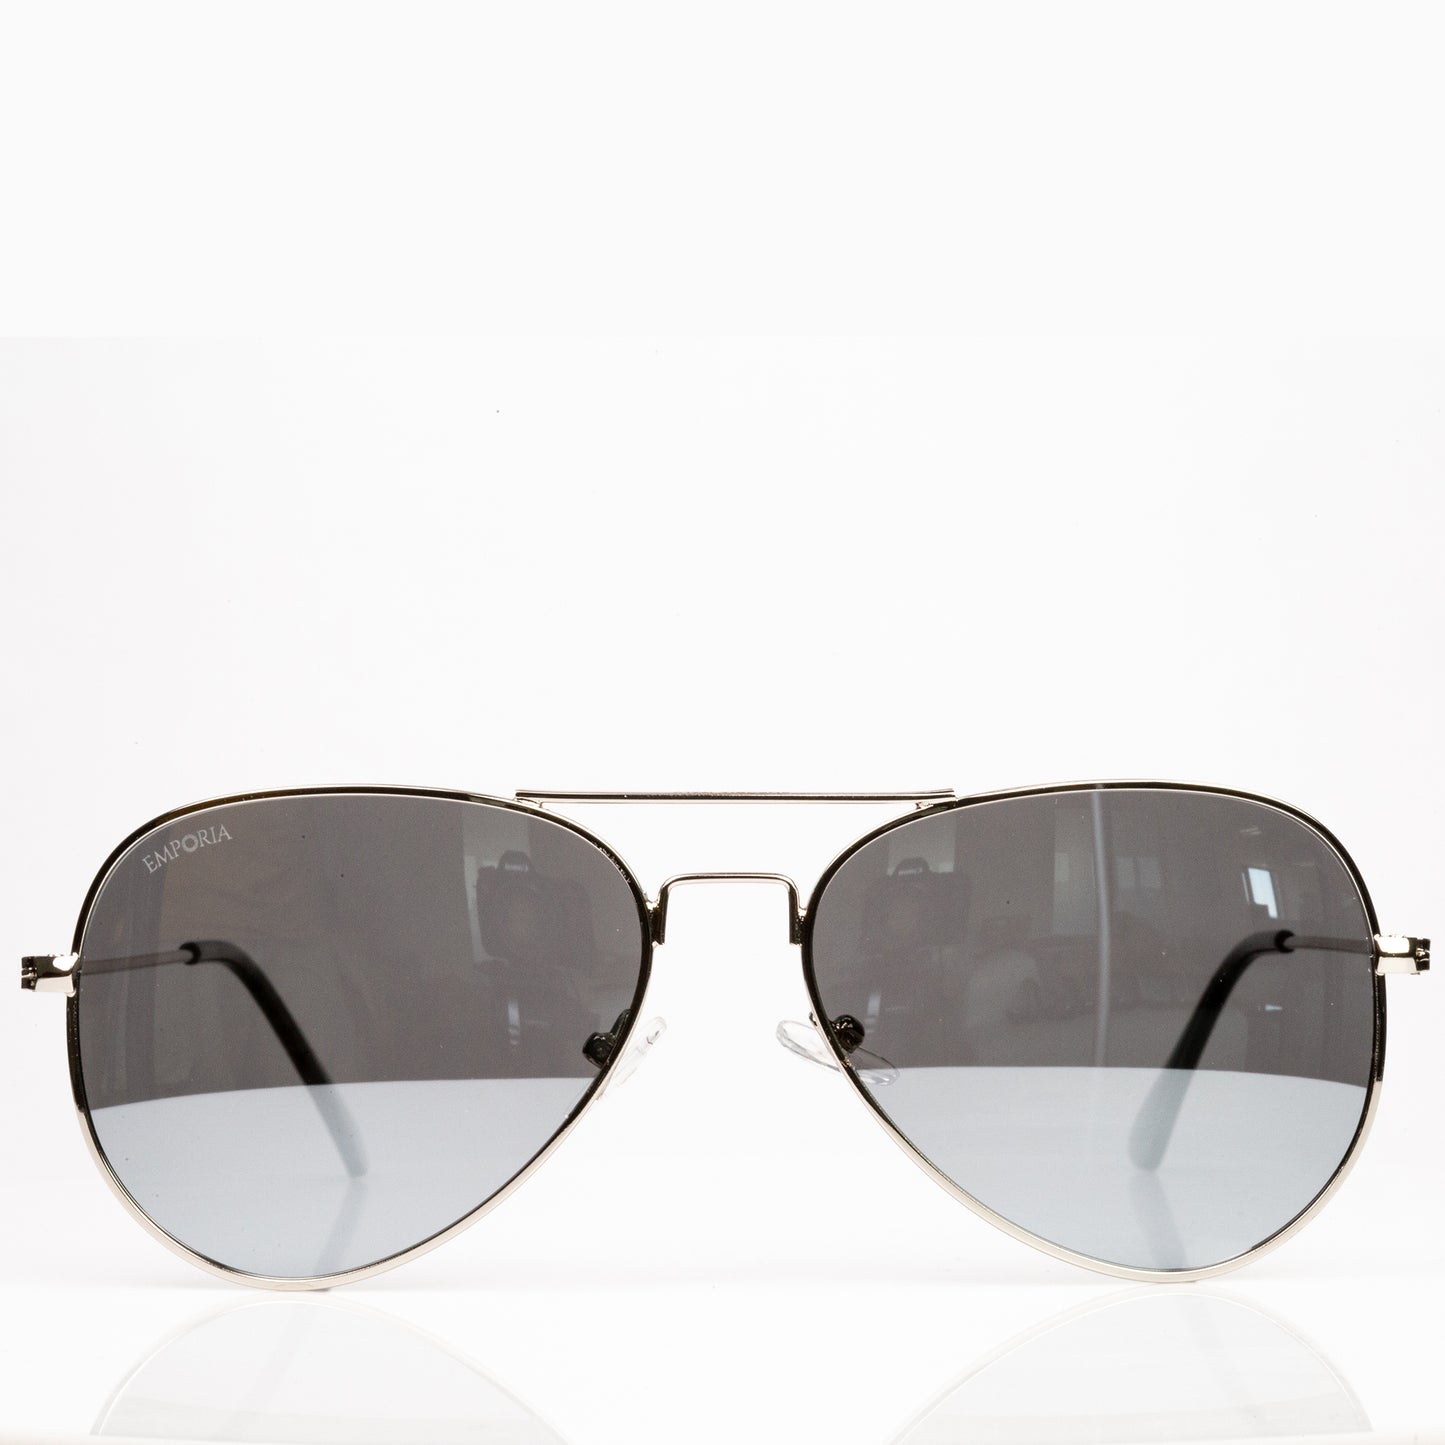 Emporia Italy - Gafas de sol piloto "CRYSTAL", gafas de sol polarizadas con filtro UV con estuche y paño de limpieza, lentes cromo-plata, montura plateada